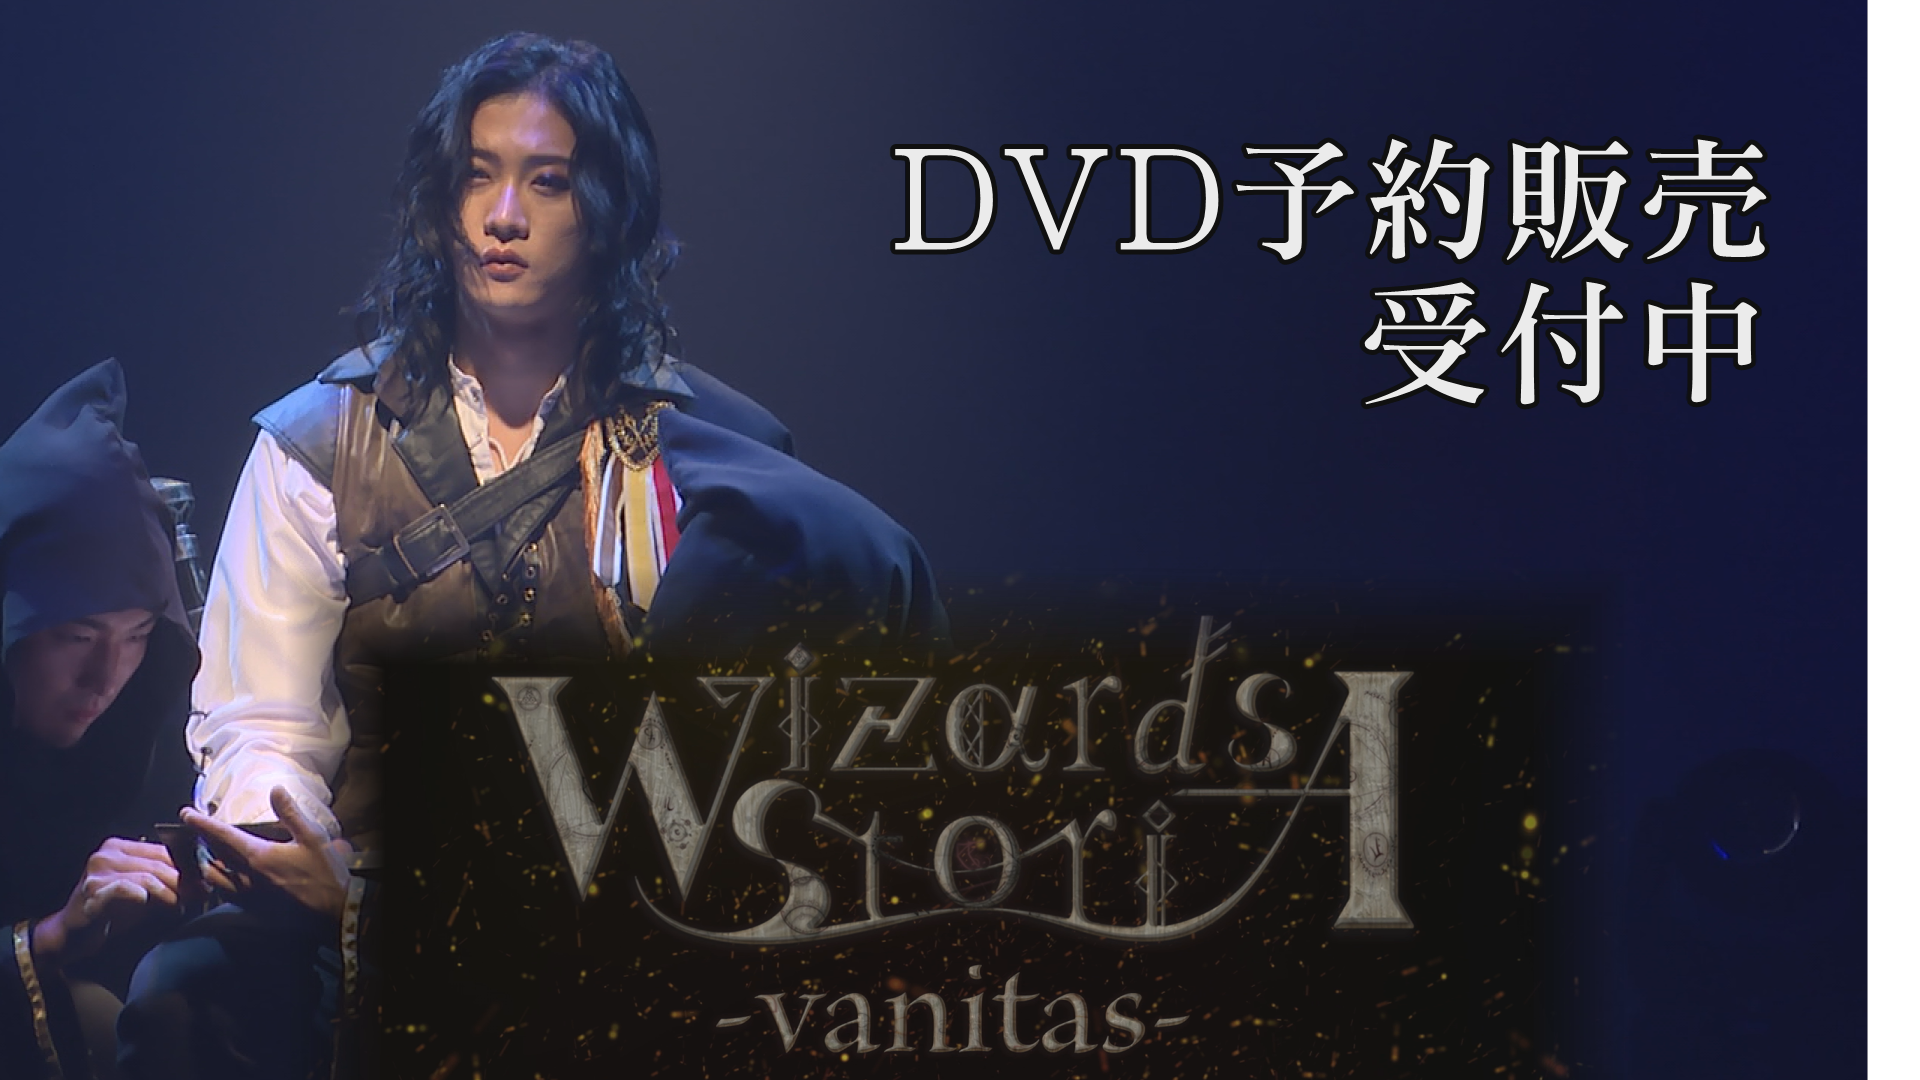 【PR動画】朗読劇「Wizards StoriA-vanitas-」